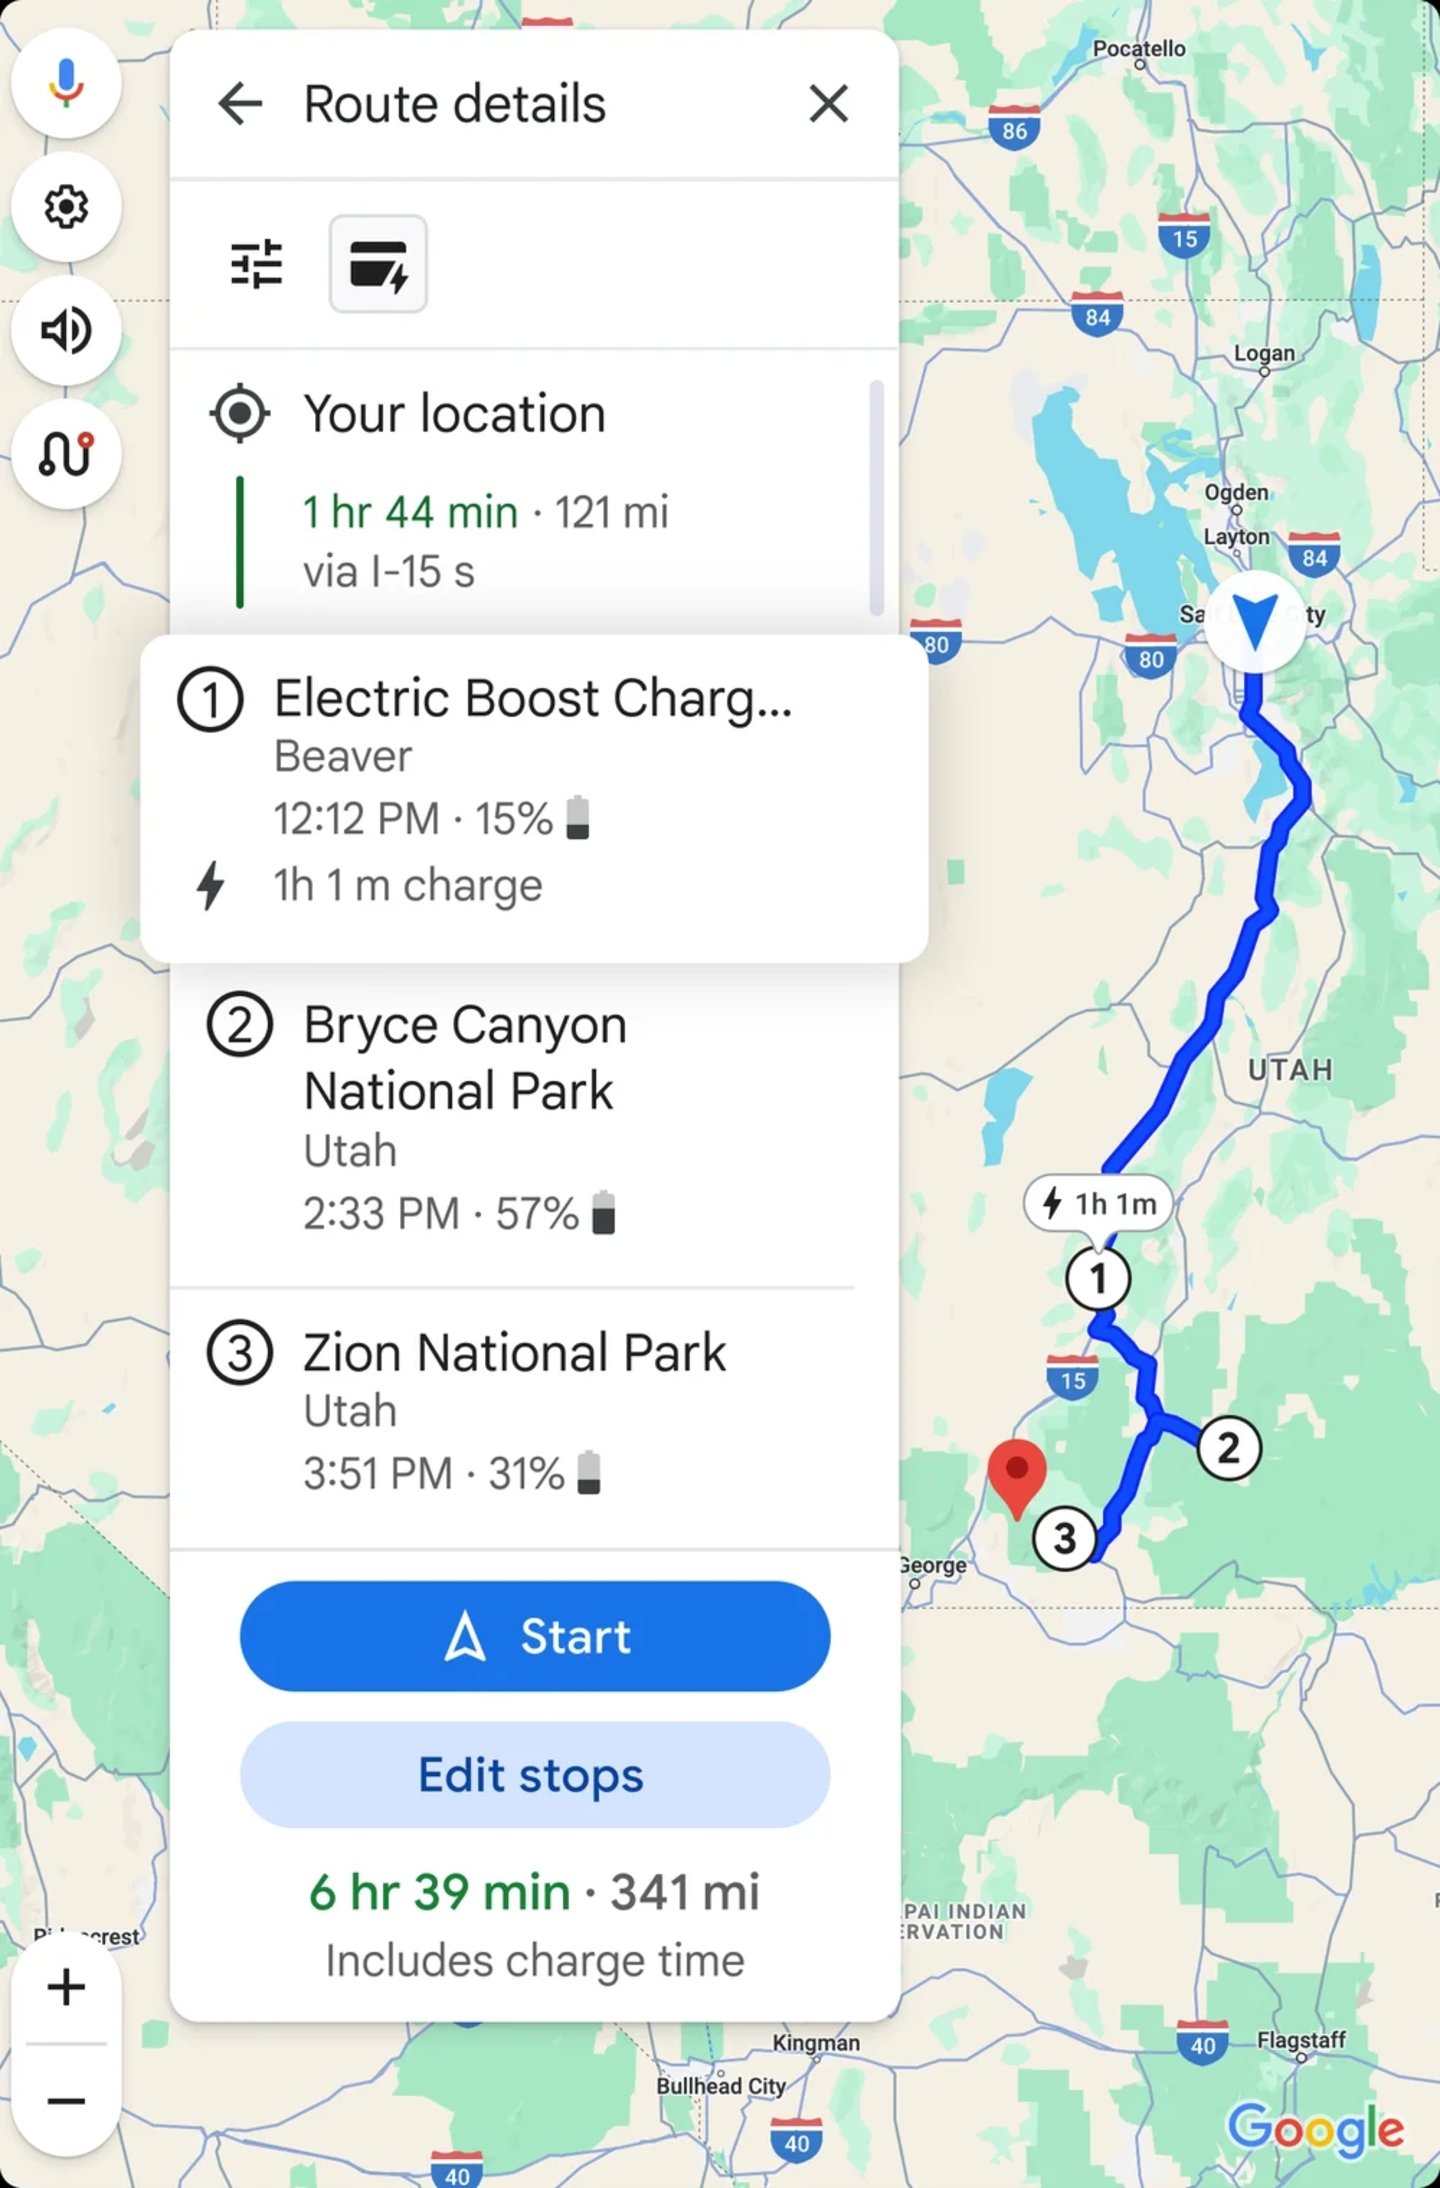 Google Maps sugerirá rutas en transporte público y a pie como alternativa al coche en estas ciudades